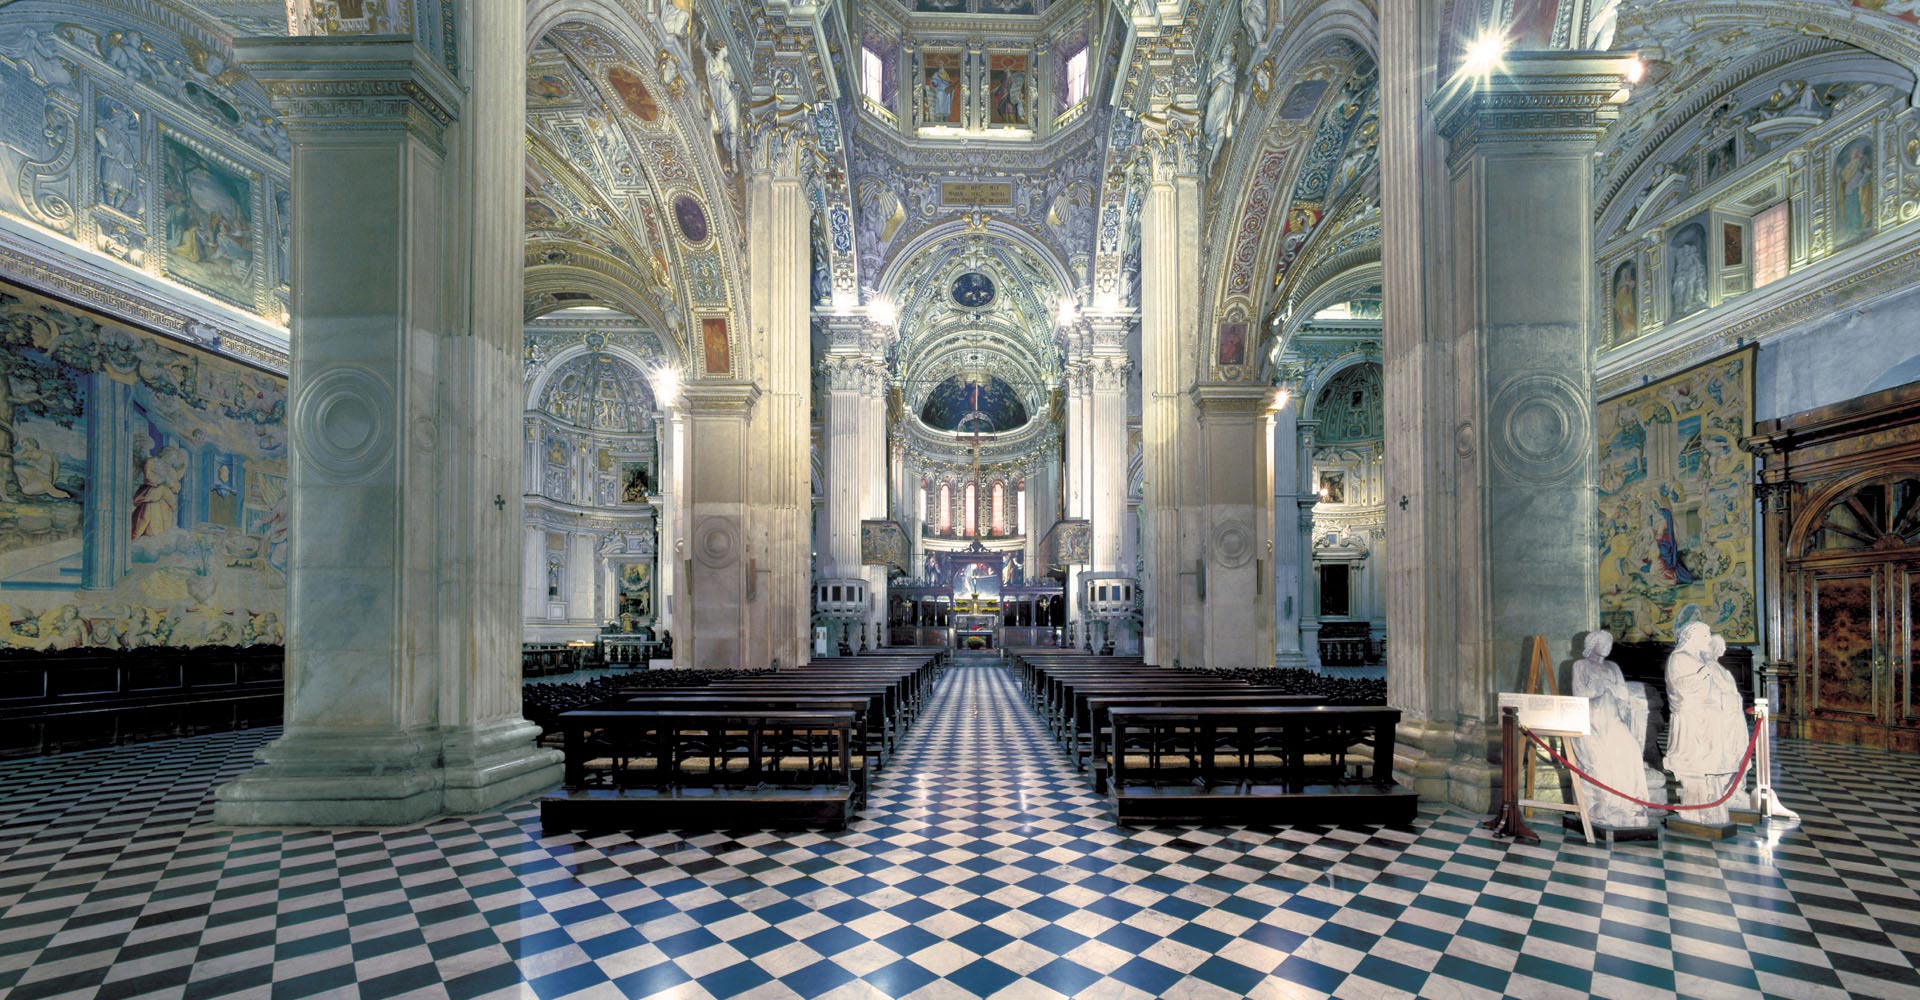 The Basilica of Santa Maria Maggiore